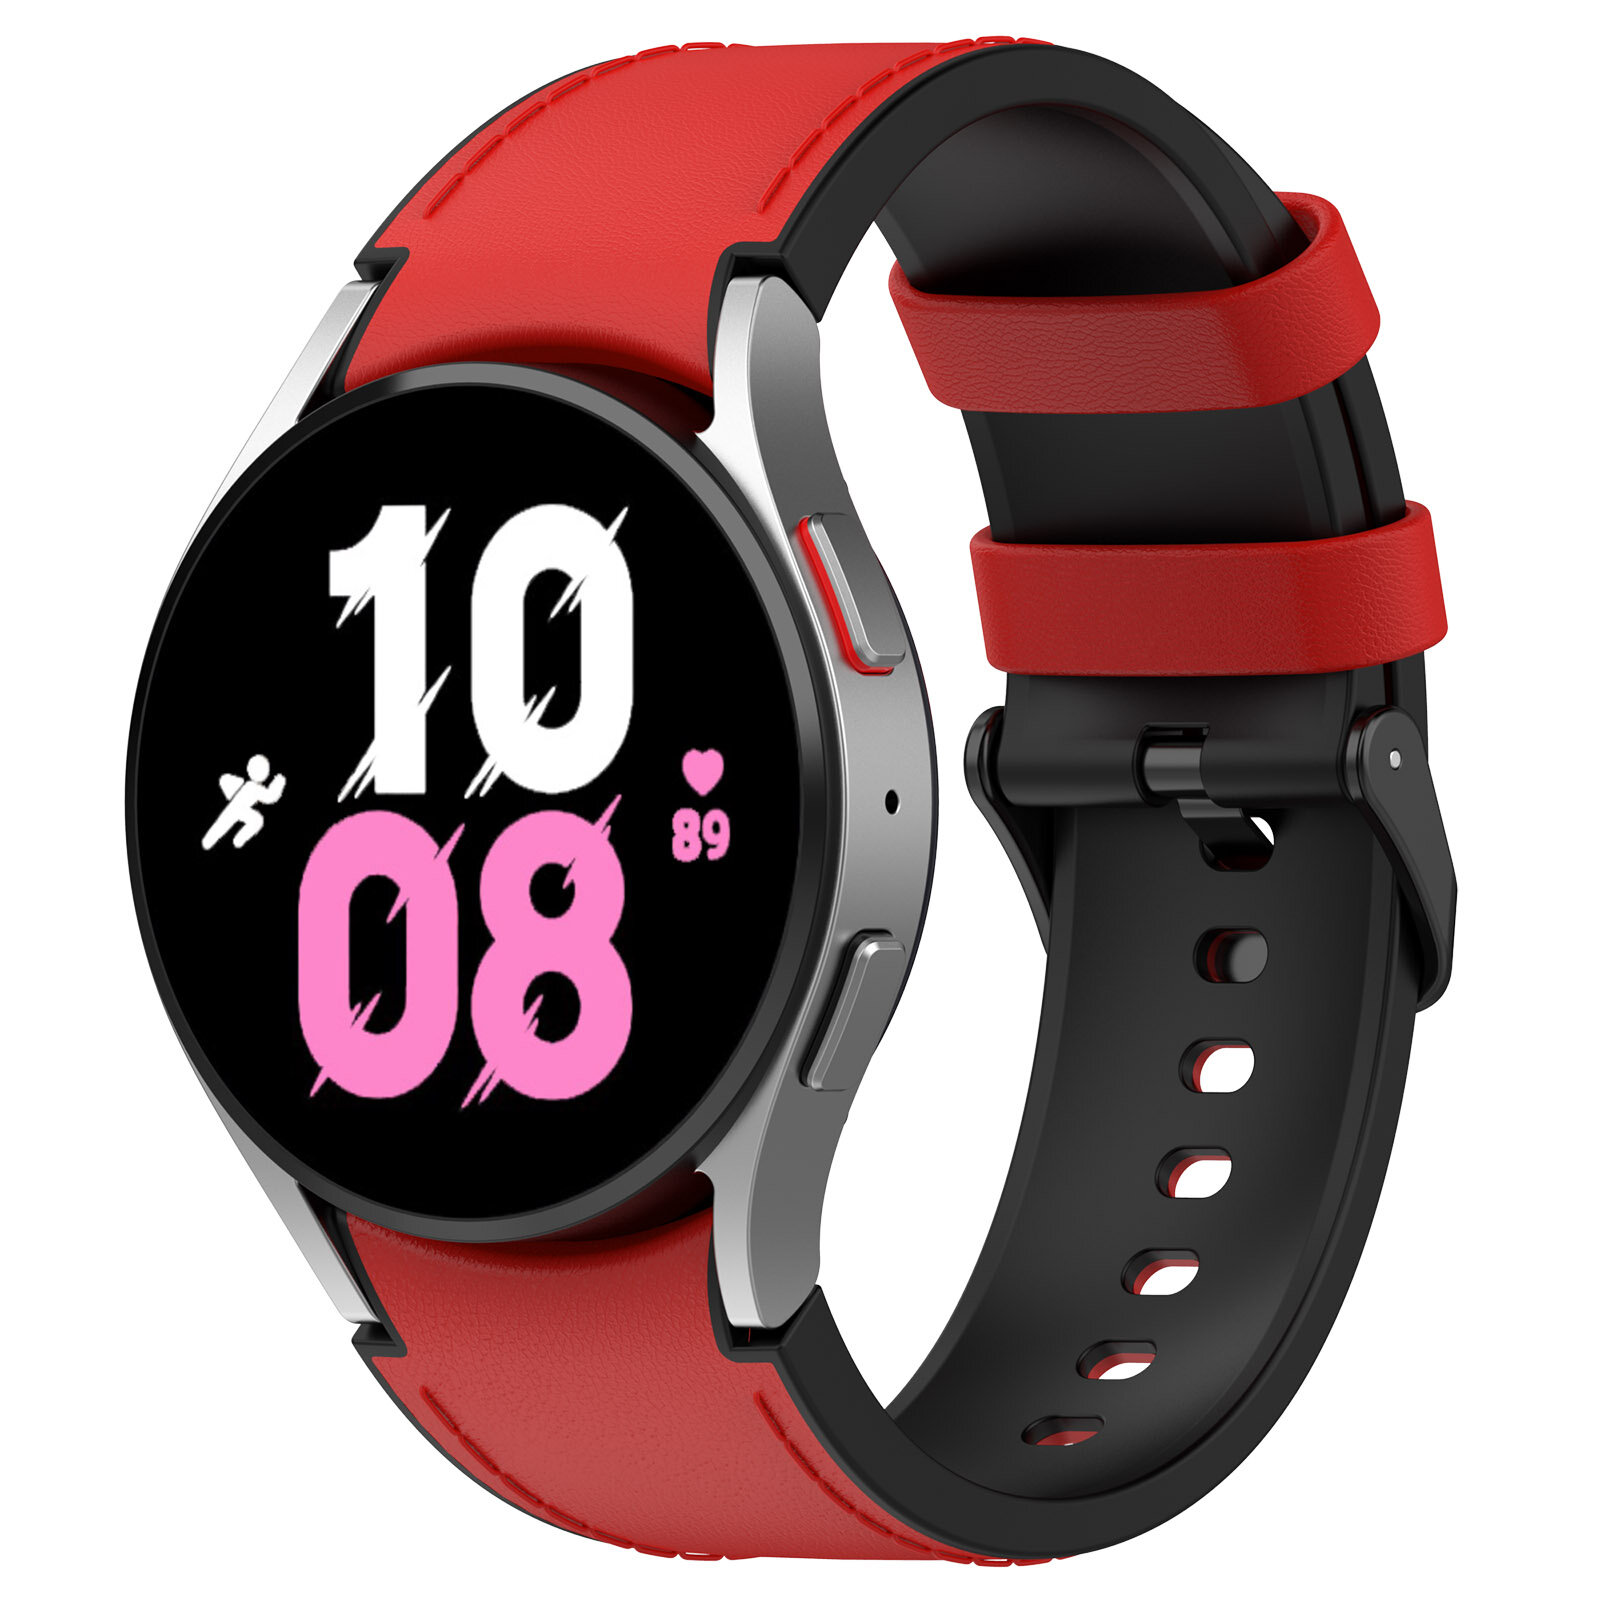 Двухцветный кожаный ремешок для Samsung Galaxy Watch, размер L, черно-красный, черная пряжка